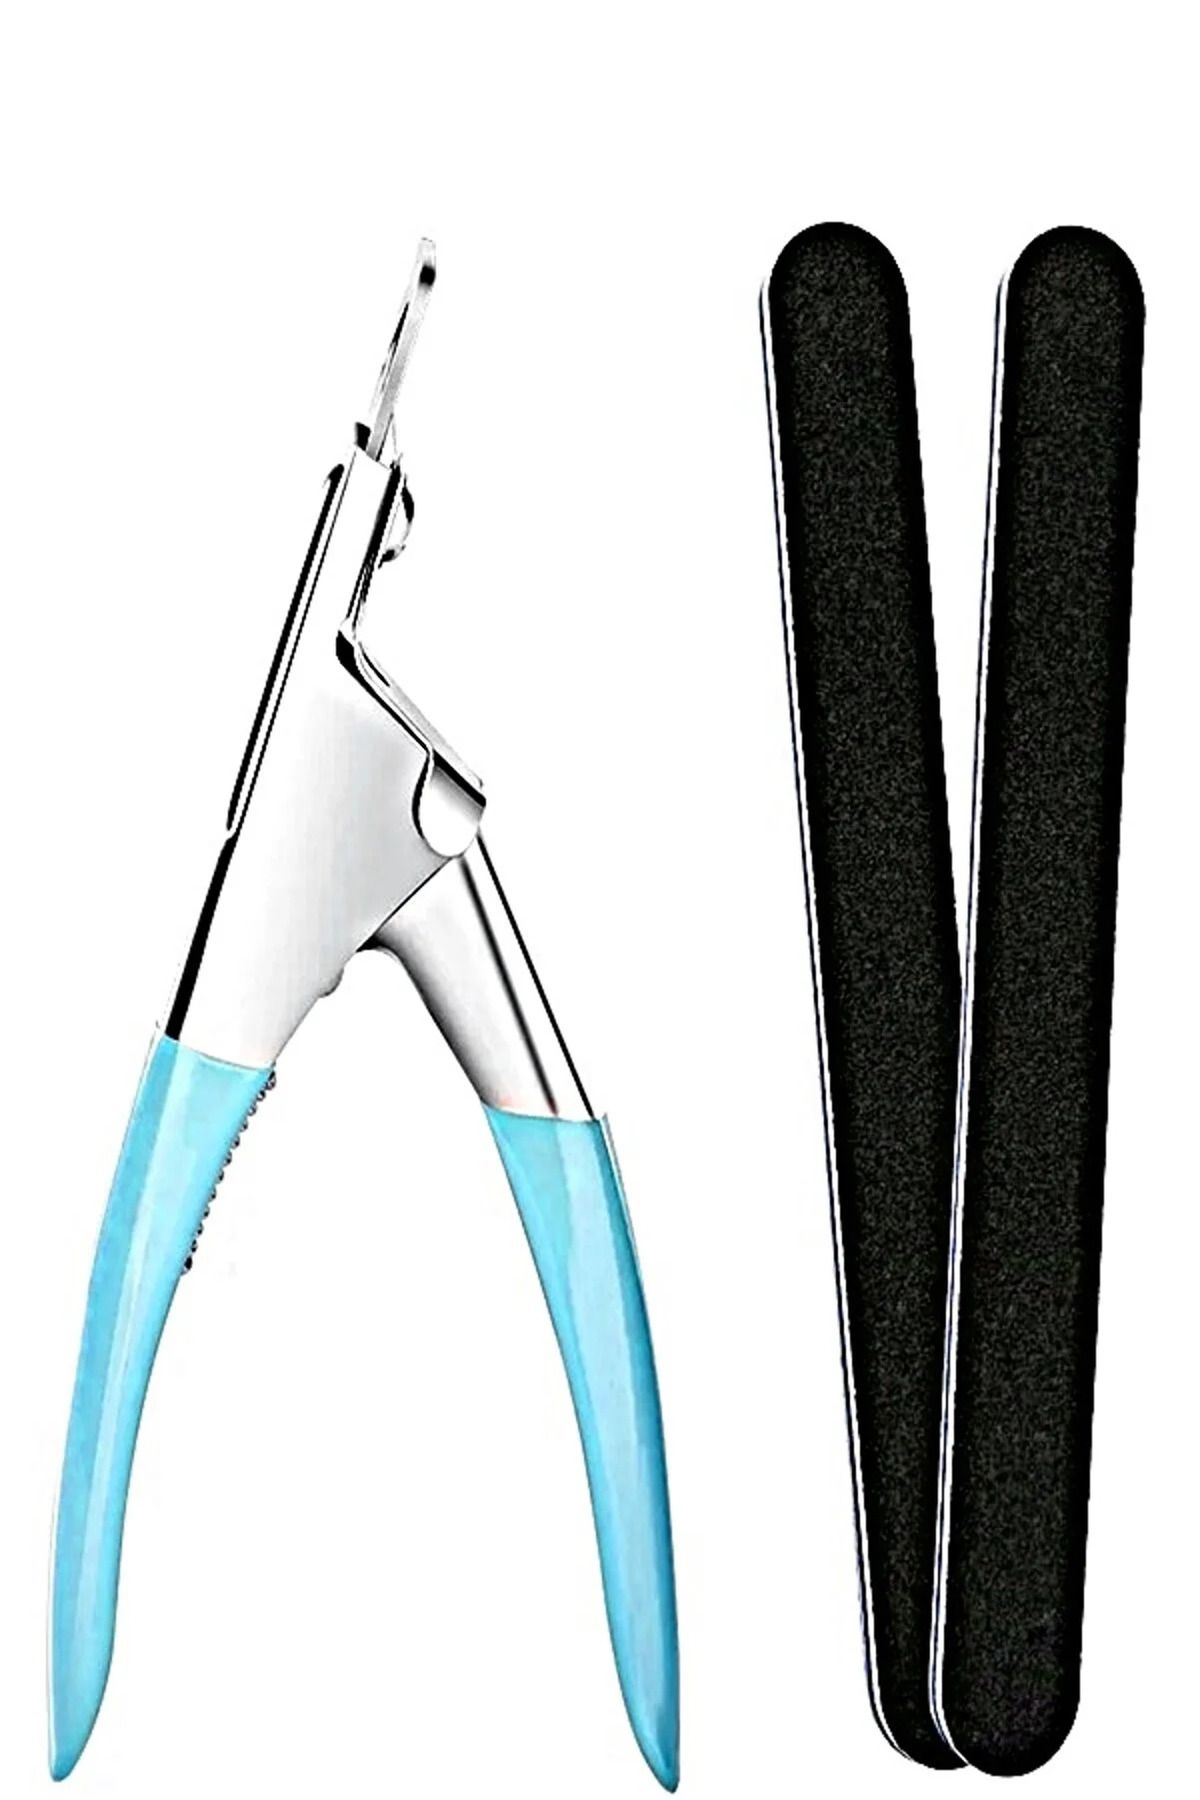 Xolo Protez Tırnak Tips Kesme Makası ve 2 Adet Kağıt Törpü Seti Takma Tırnak Makası Pens Makası